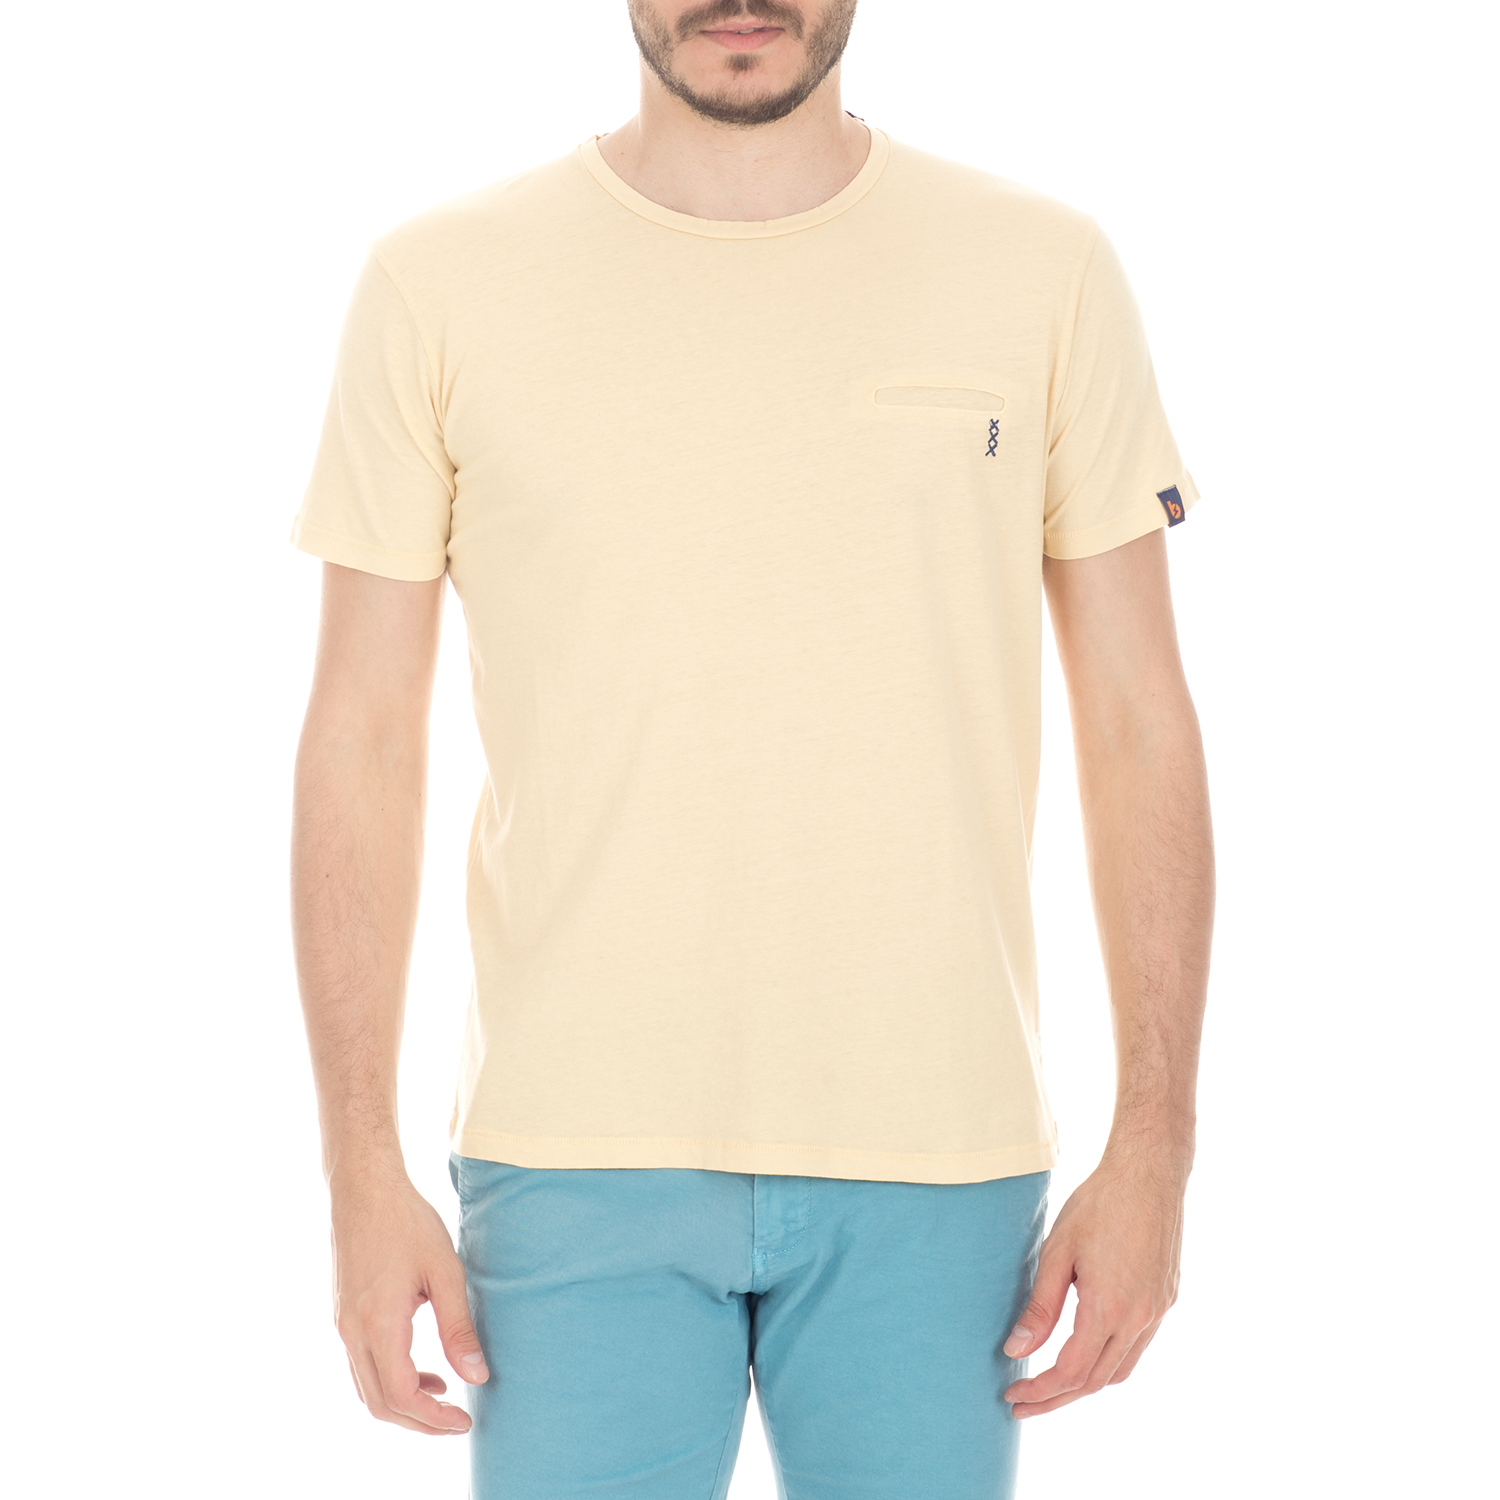 Ανδρικά/Ρούχα/Μπλούζες/Κοντομάνικες BATTERY - Ανδρική μπλούζα BATTERY κίτρινη